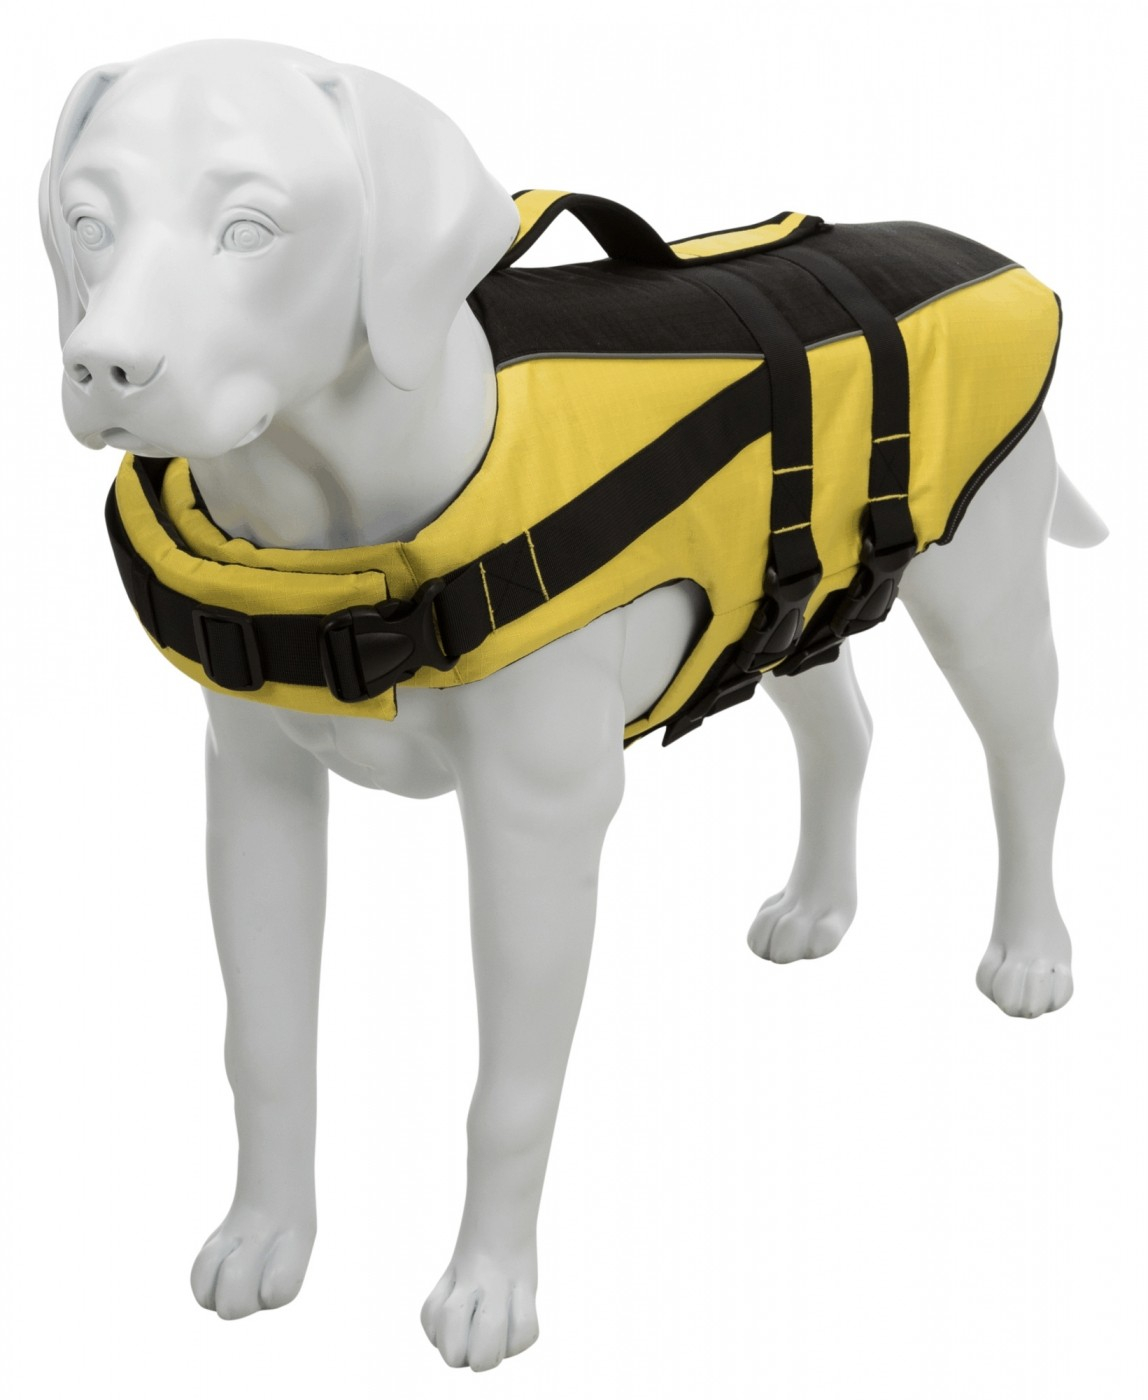 Schwimmweste für Hunde Gelb / Schwarz - in verschiedenen Größen erhältlich